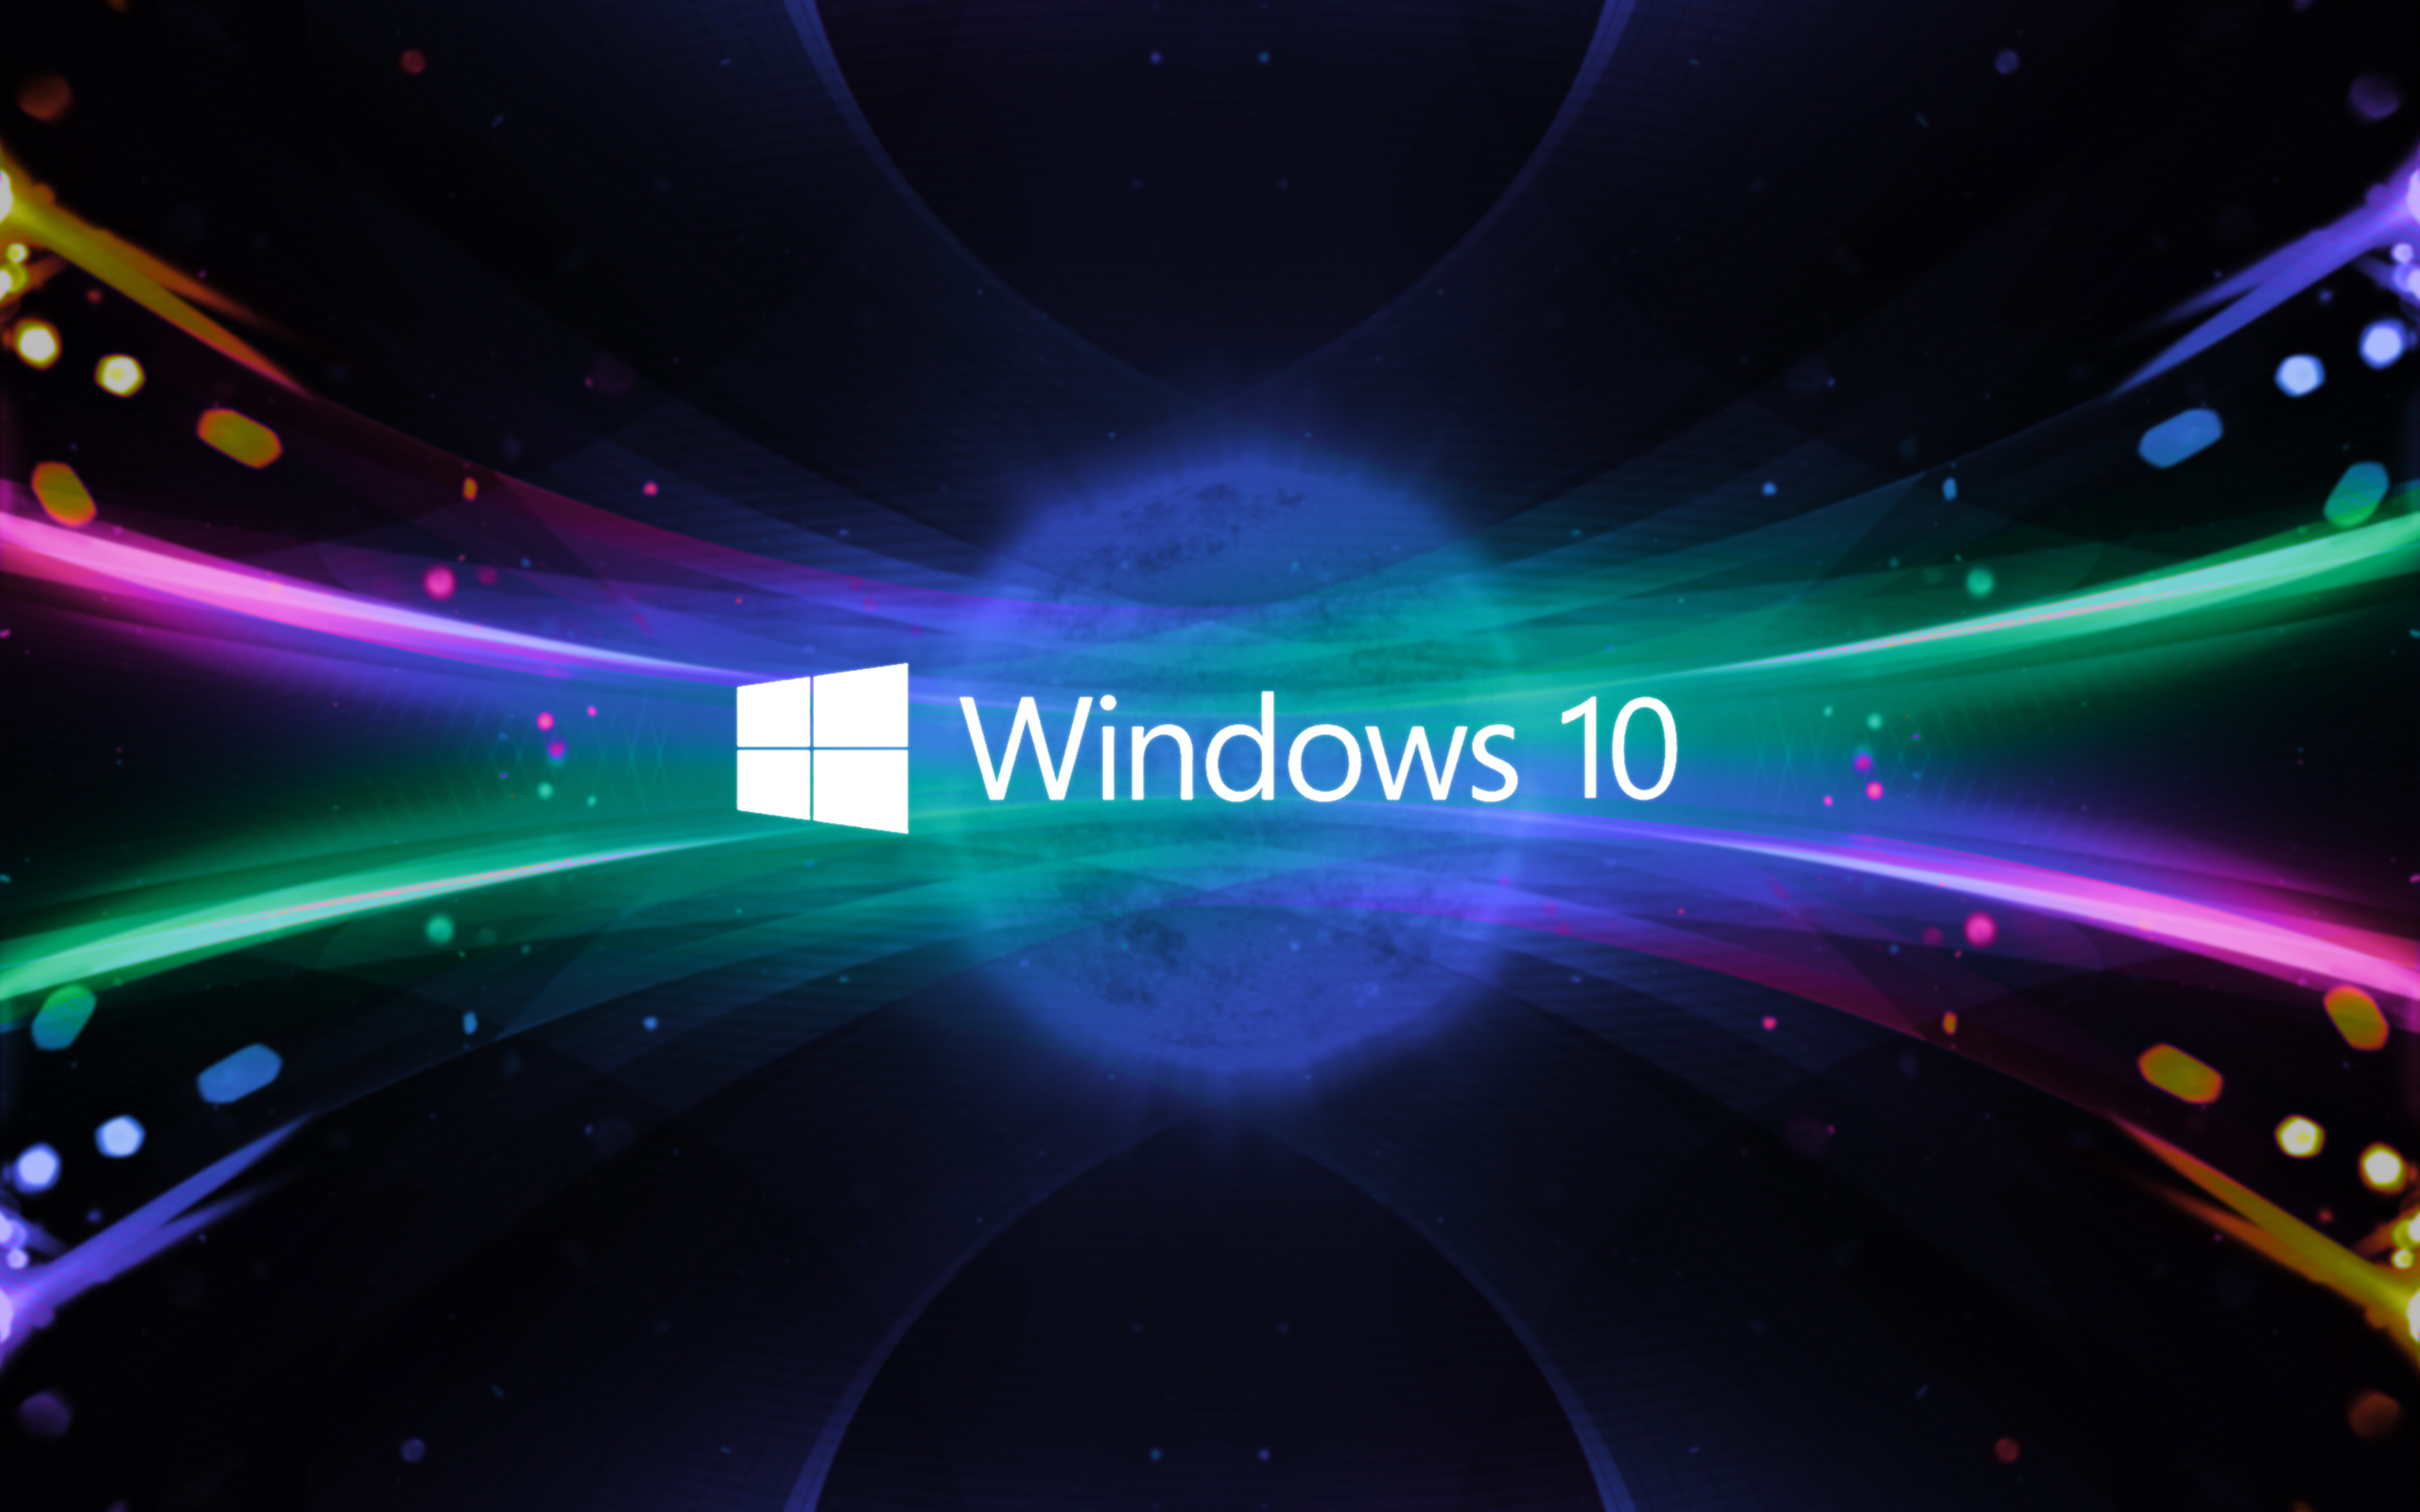 Bạn đang tìm kiếm một hệ điều hành tốt và mới nhất? Hãy cập nhật ngay tới Windows 10 miễn phí và trải nghiệm những tính năng đầy ấn tượng. Click ngay để tải về!